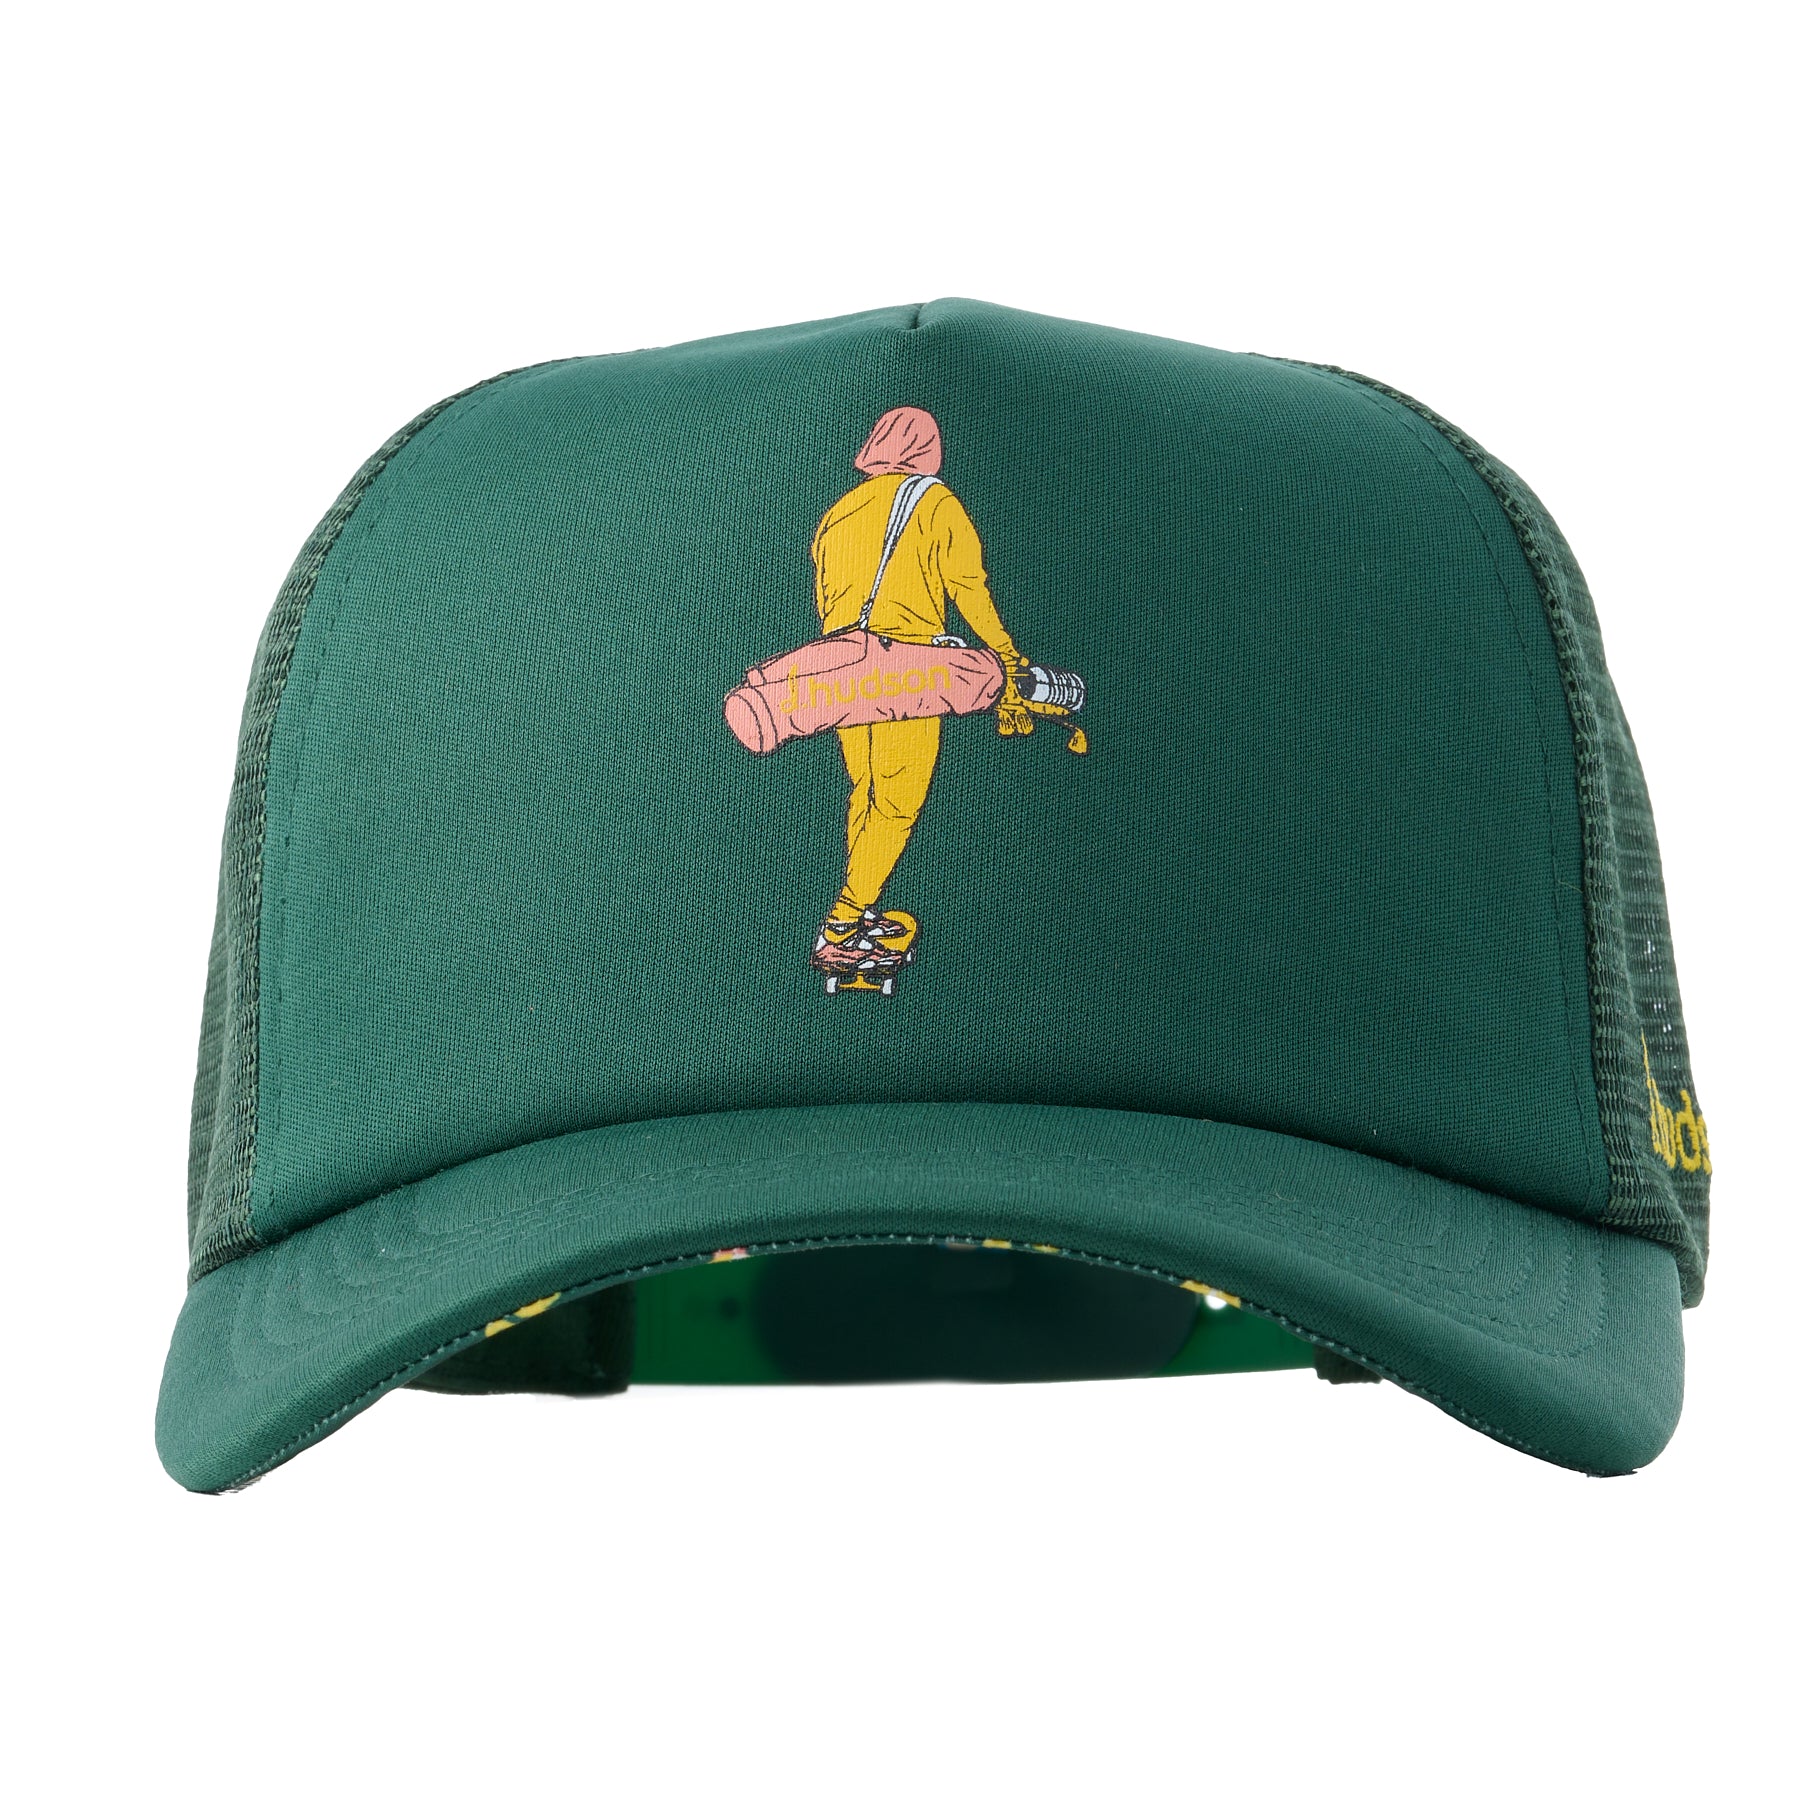 d.hudson Men's Golf Hat - Semi Pro Foam Trucker Hat (Forest Green/Mustard)